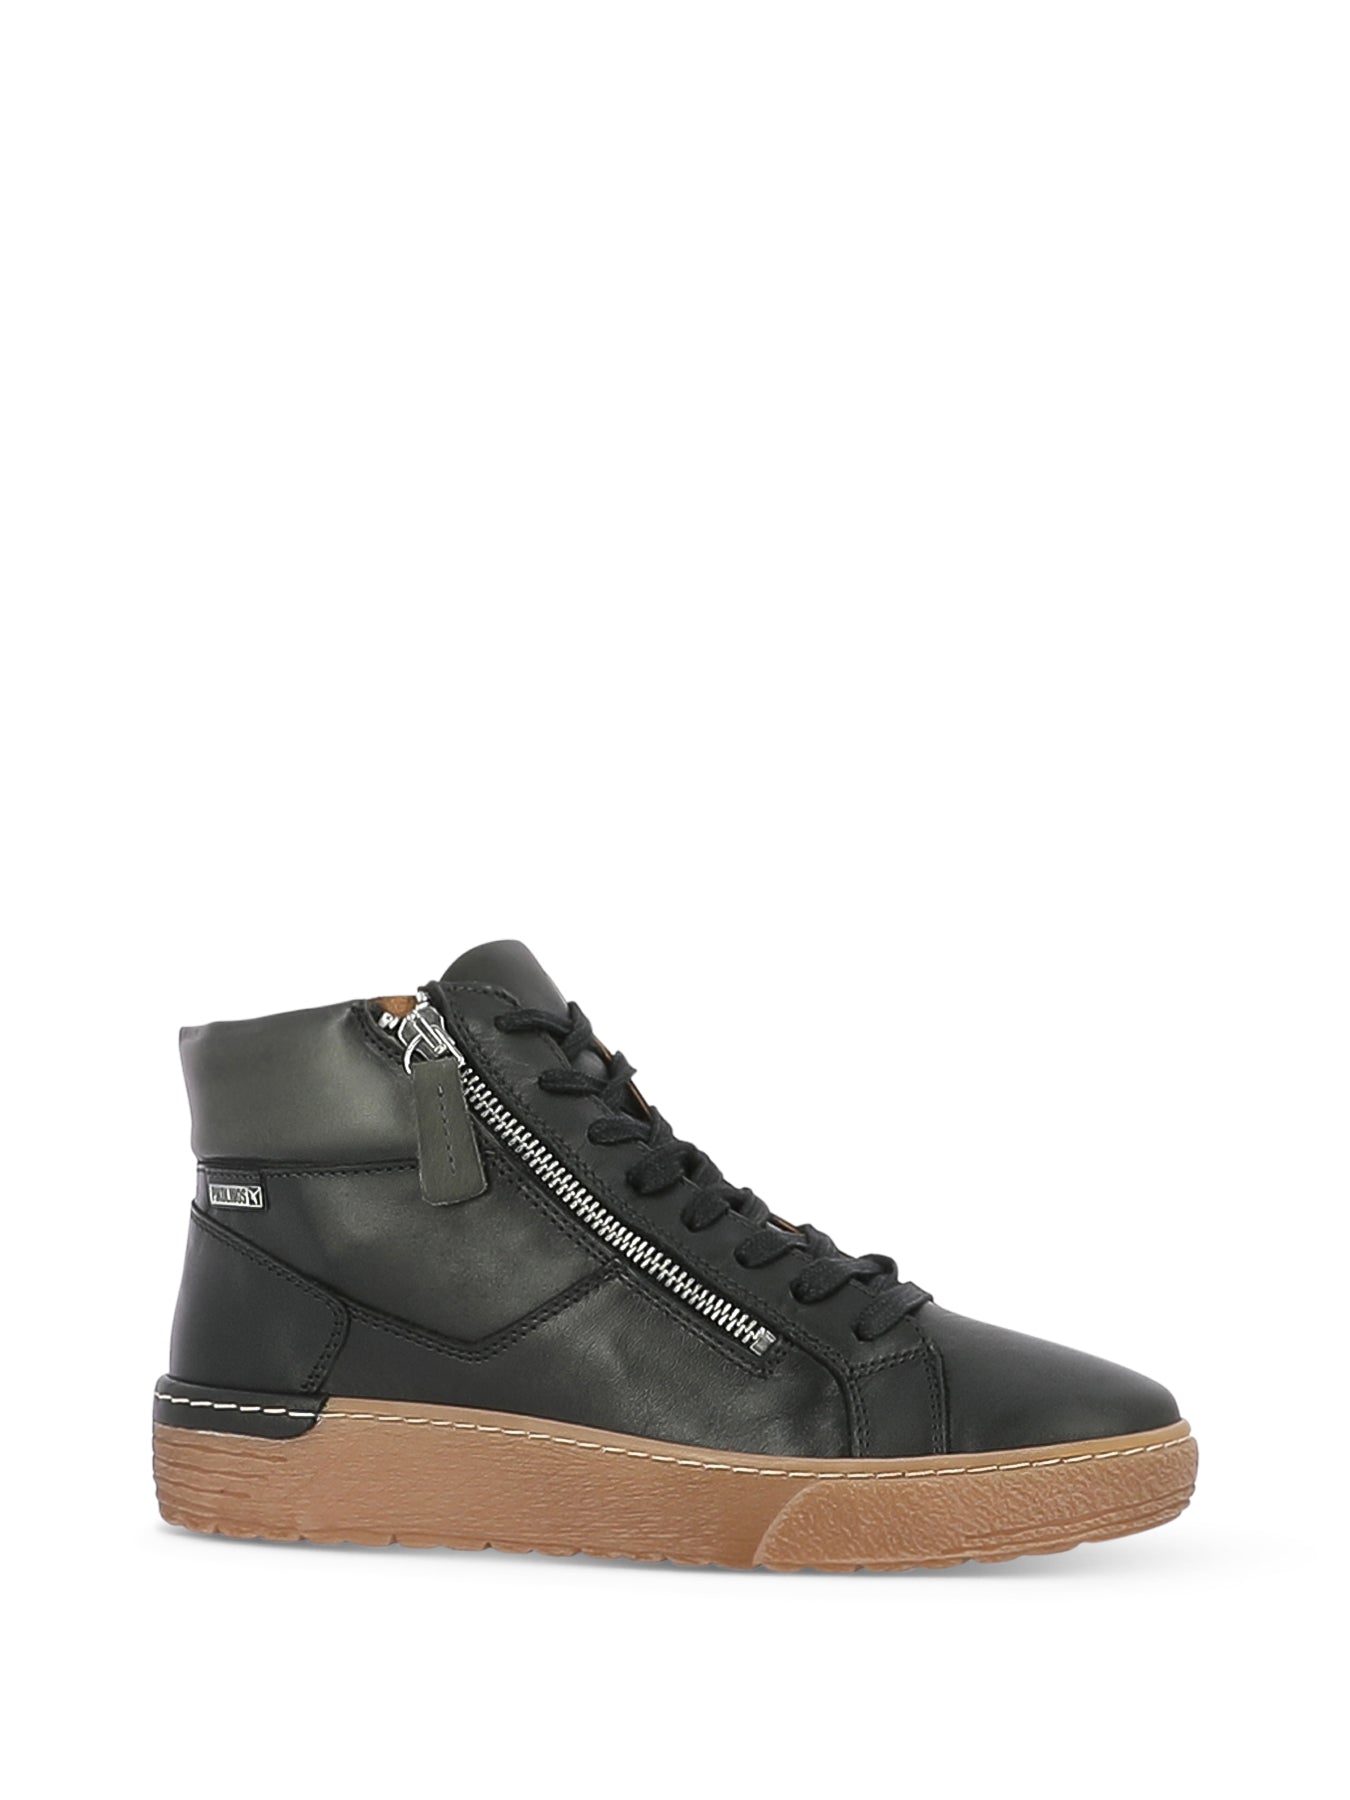 W0T-7559 C2 BLACK | Peter Sheppard Footwear